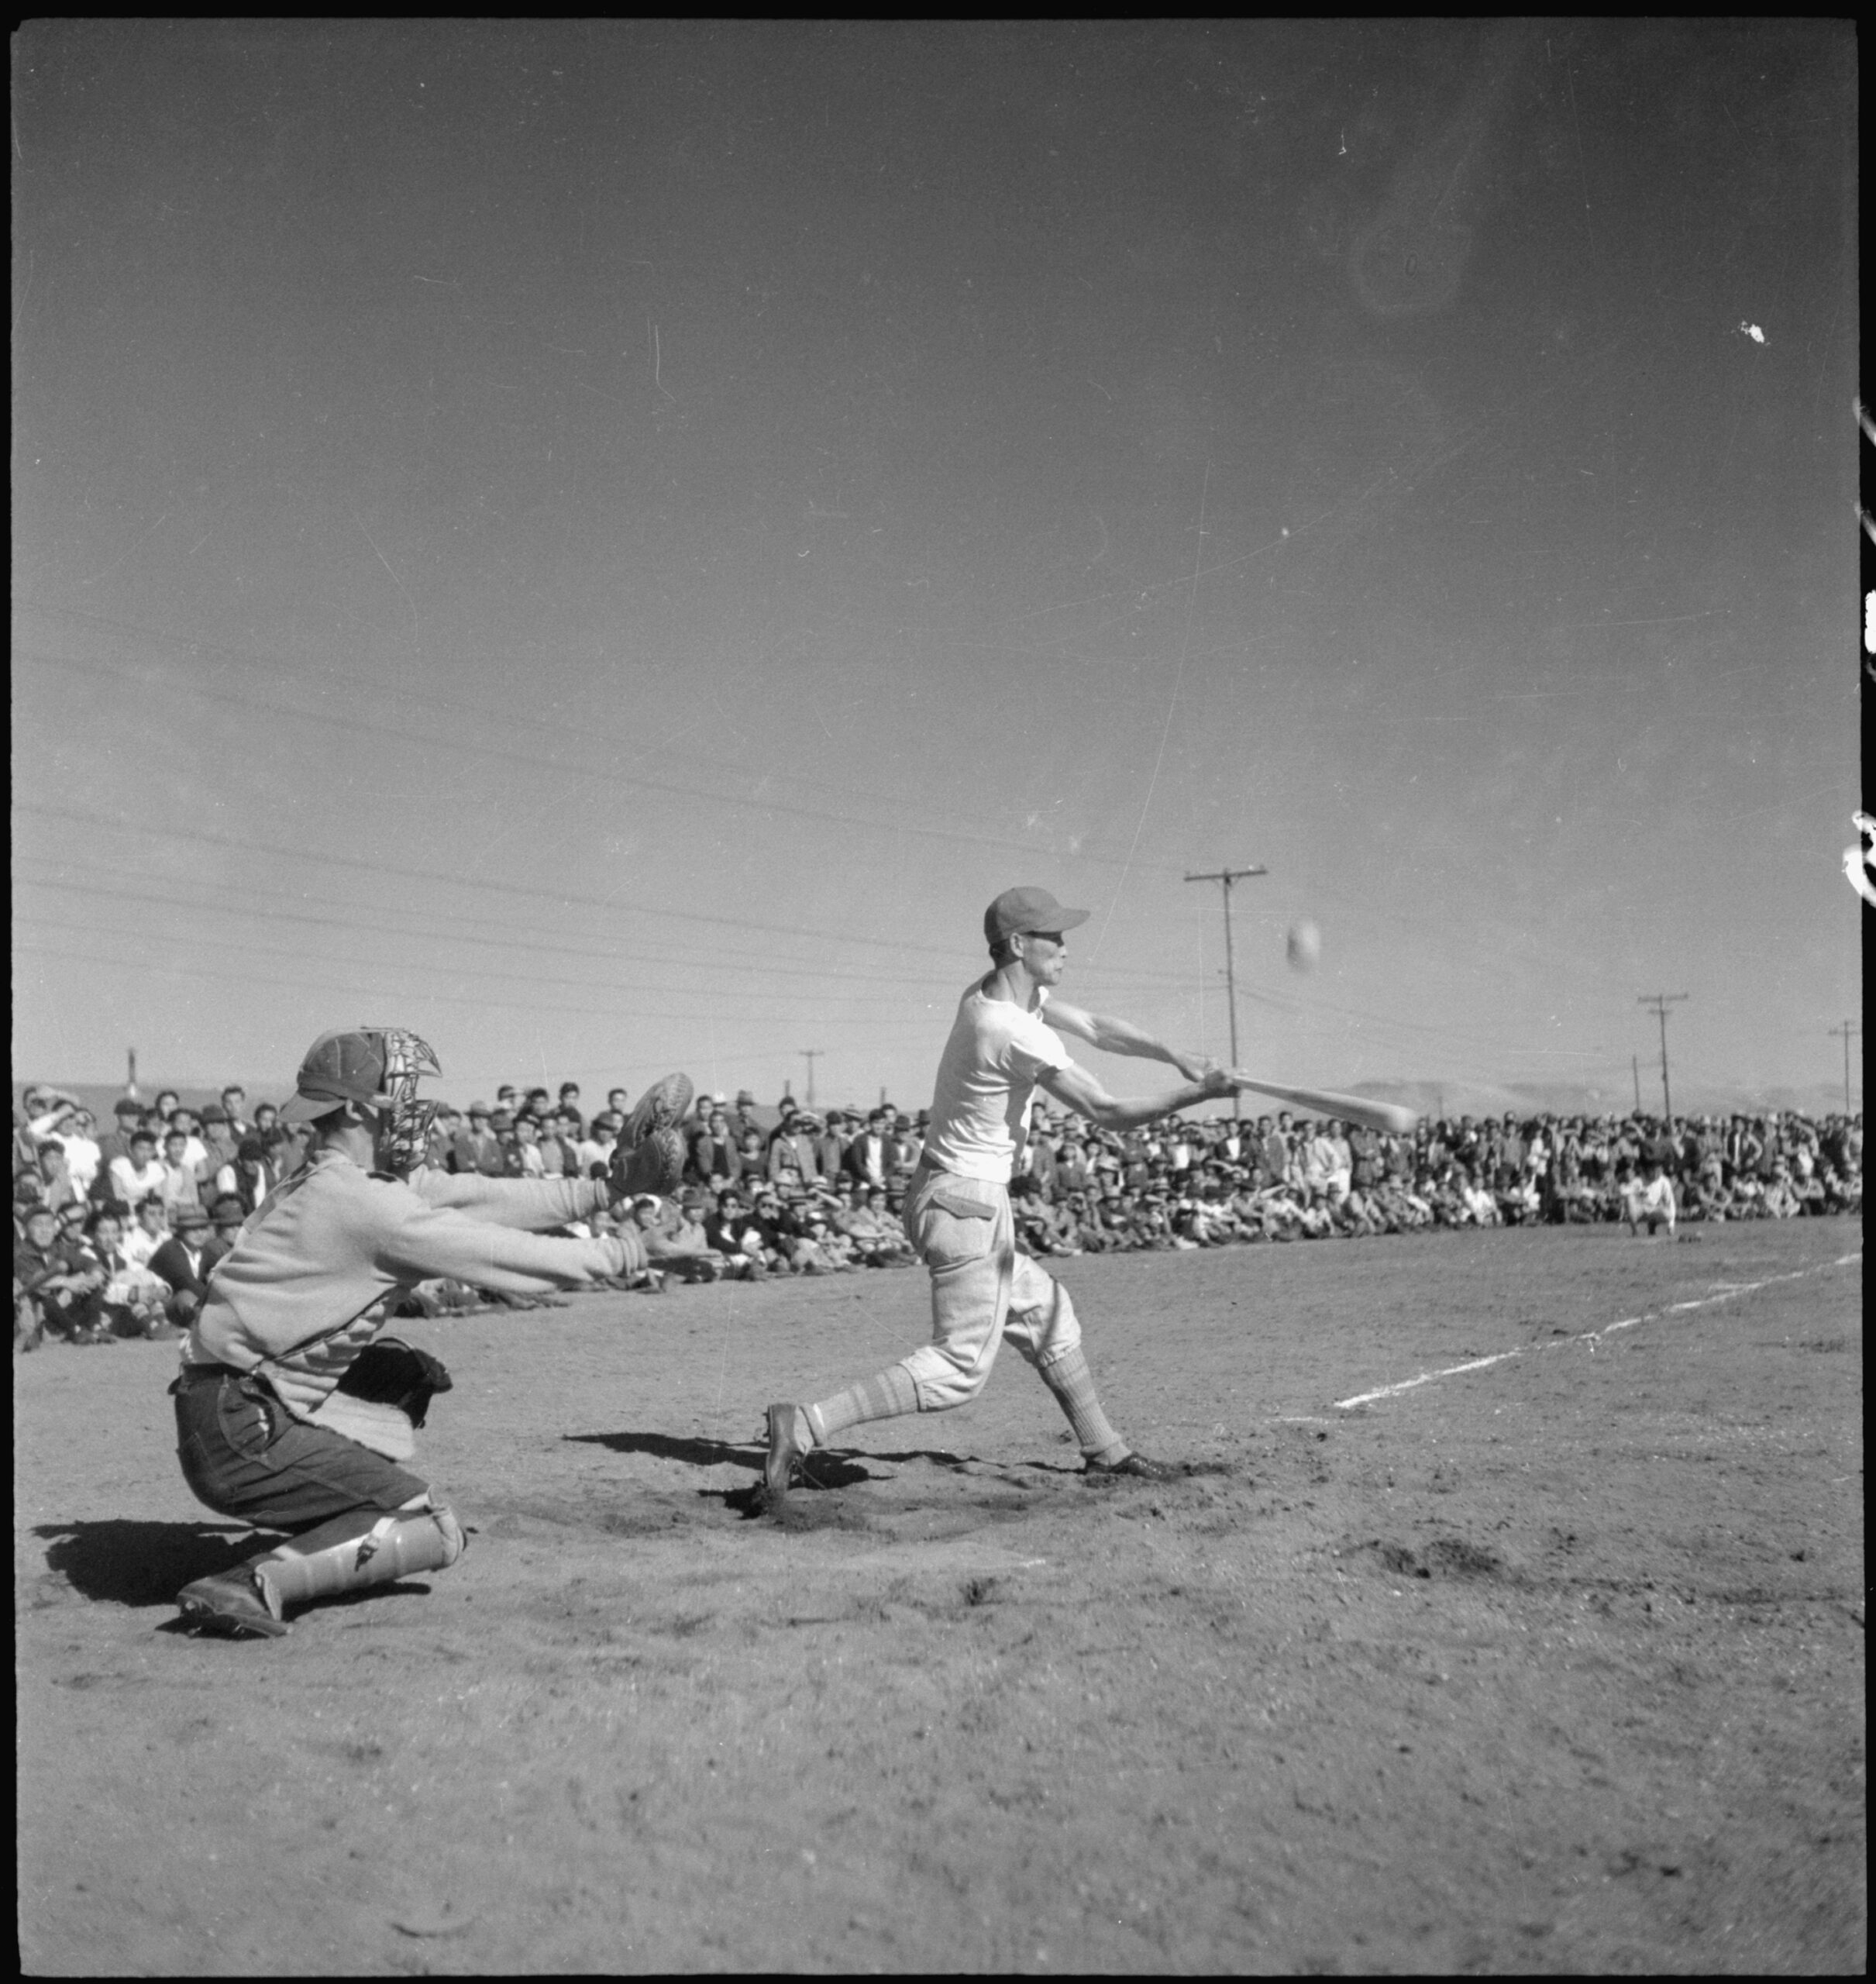 1944 baseball season begins at the Tule Lake Segregation Center in Newell, CA - NAI: 539548